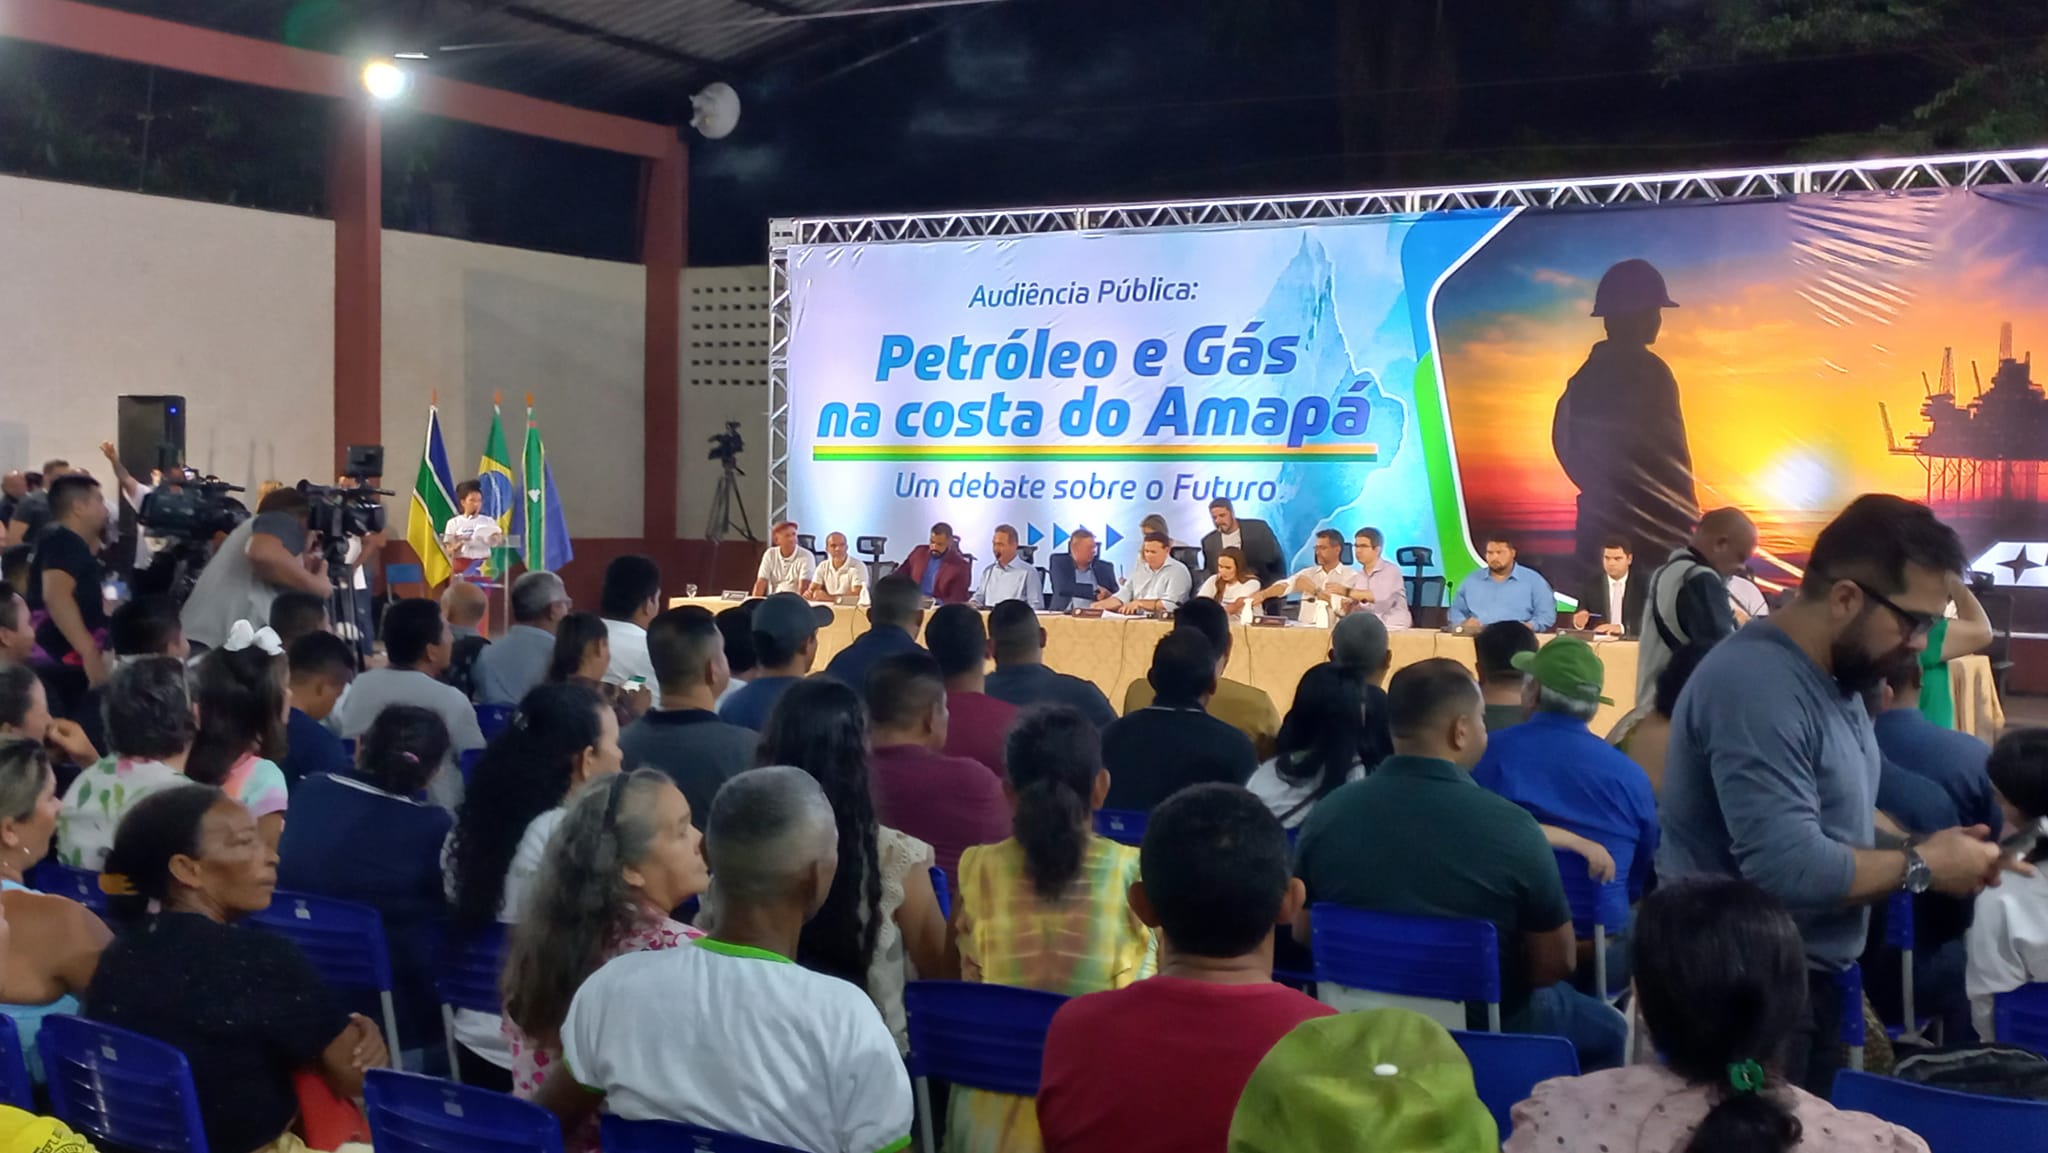 Audiência Pública “Petróleo e Gás na costa do Amapá